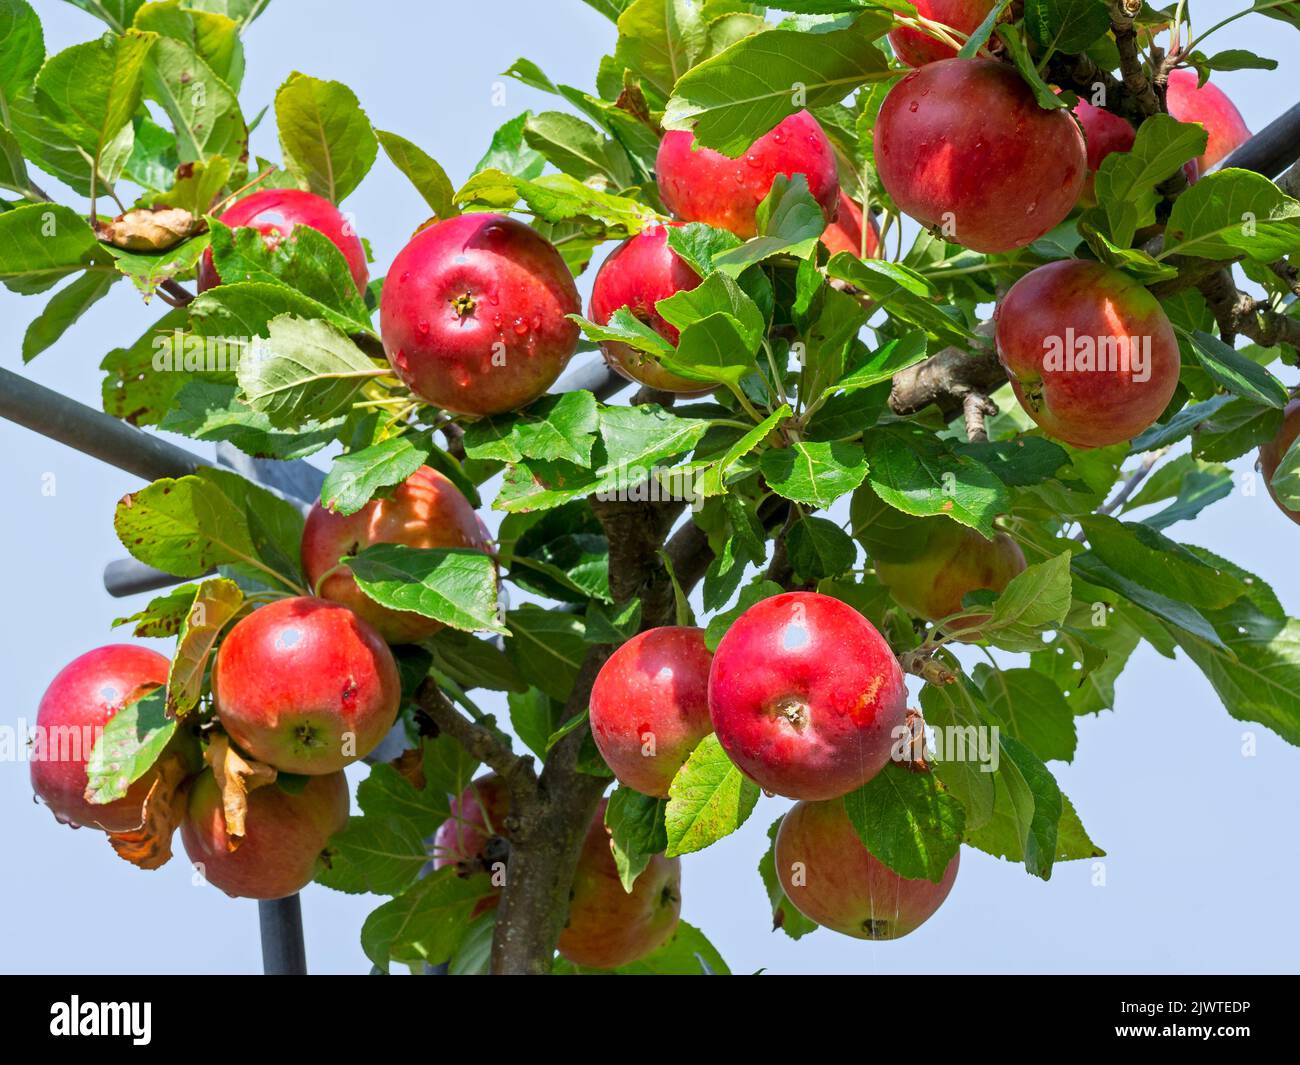 Manzanas rojas que se desarrollan en una rama del árbol Foto de stock